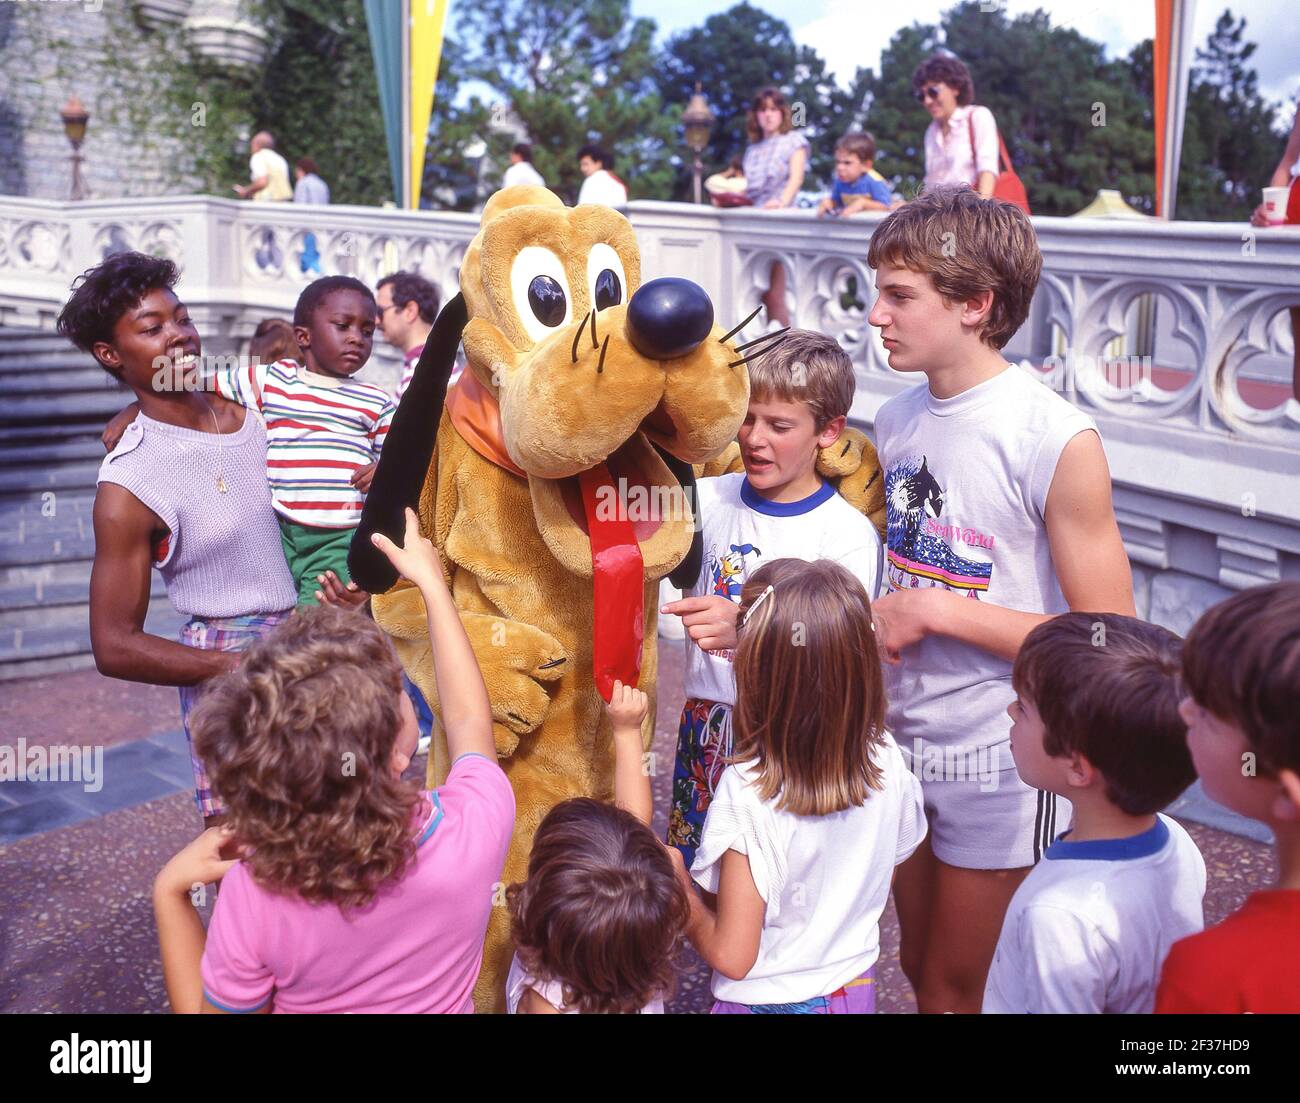 Jeunes enfants avec personnage Pluton, Fantasyland, Disneyland, Anaheim, Californie, États-Unis d'Amérique Banque D'Images